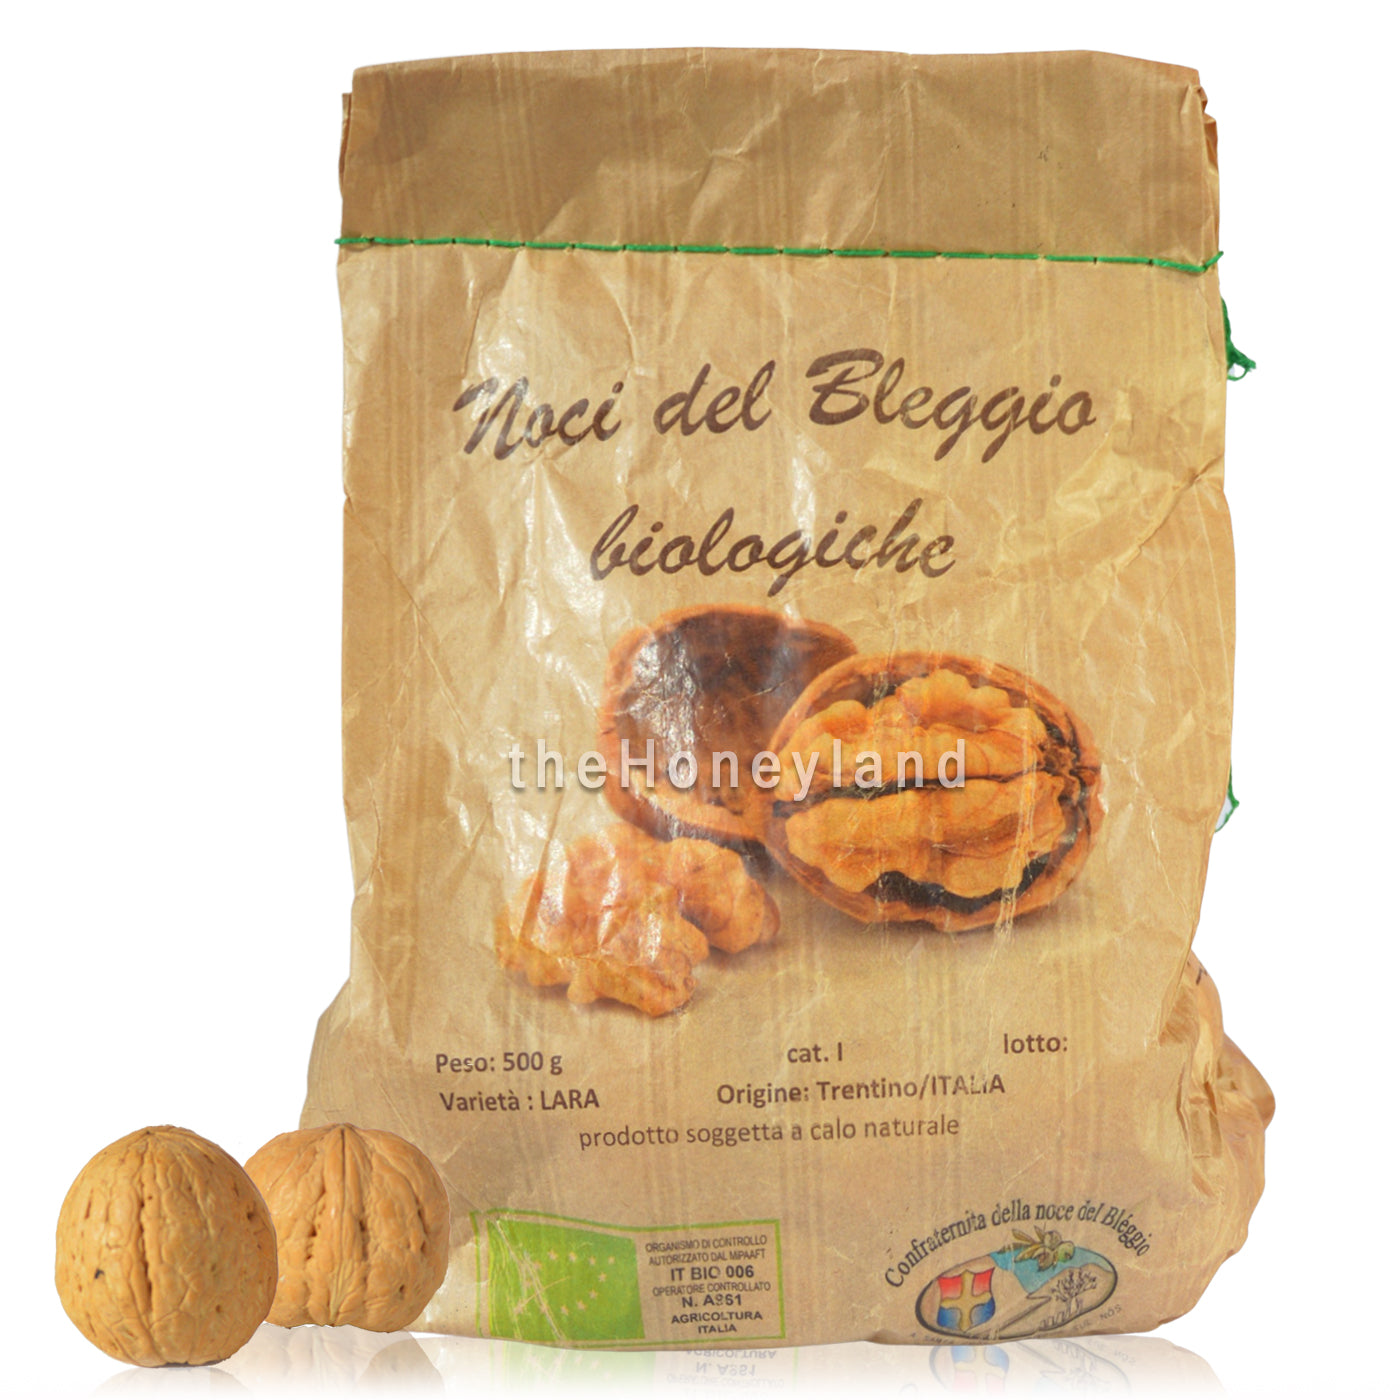 Organic Lara nuts from Bleggio